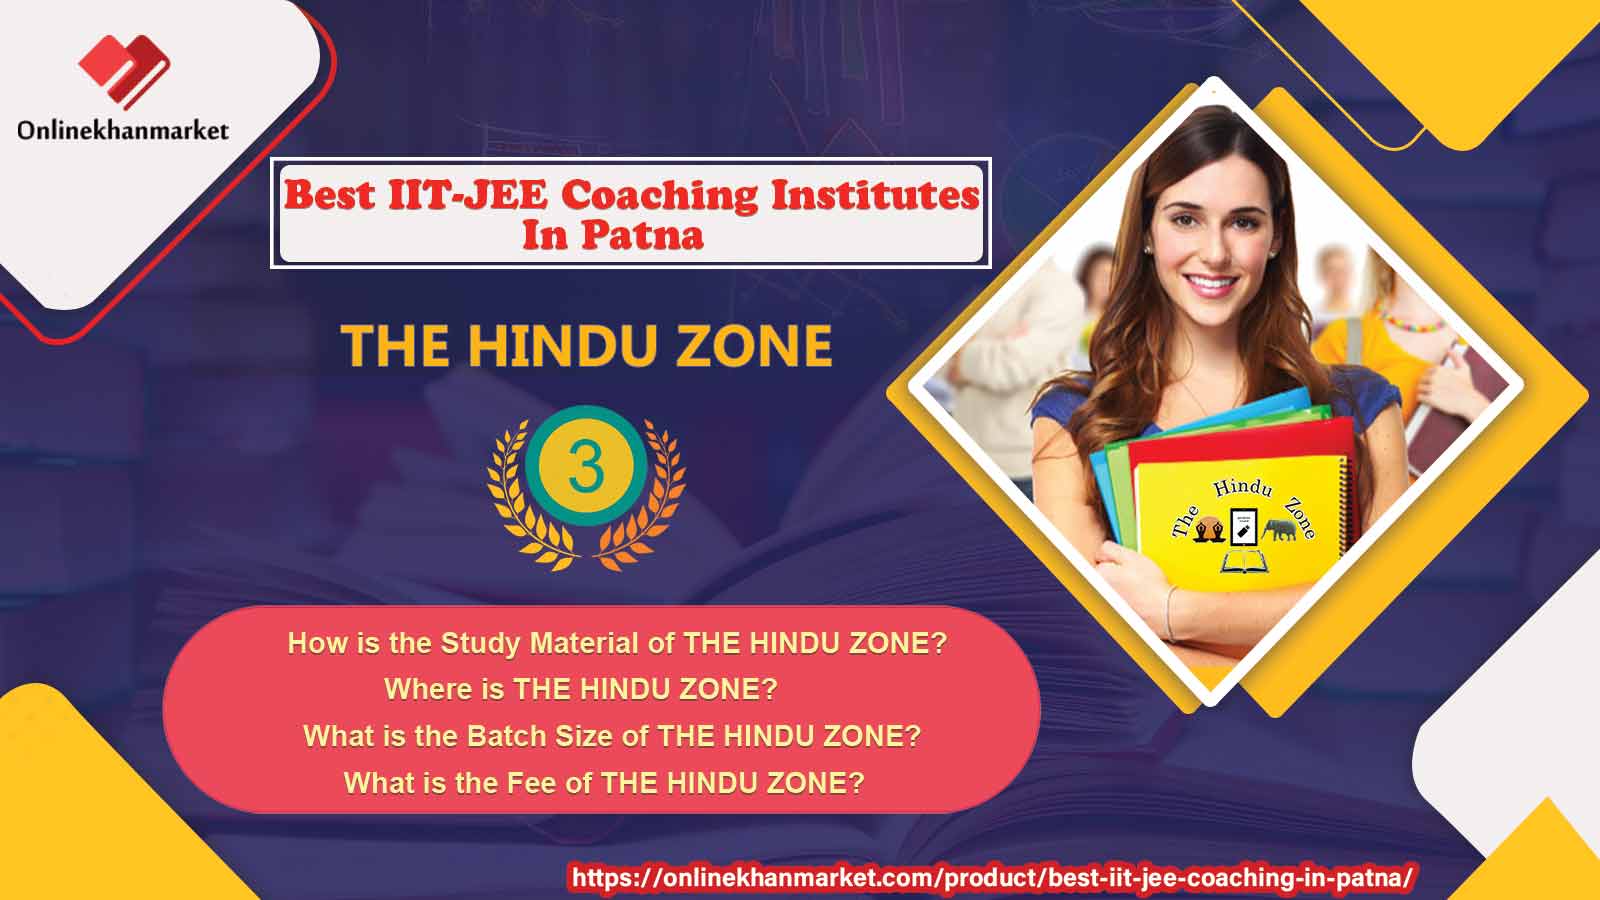 IIT Jee Coaching in Patna